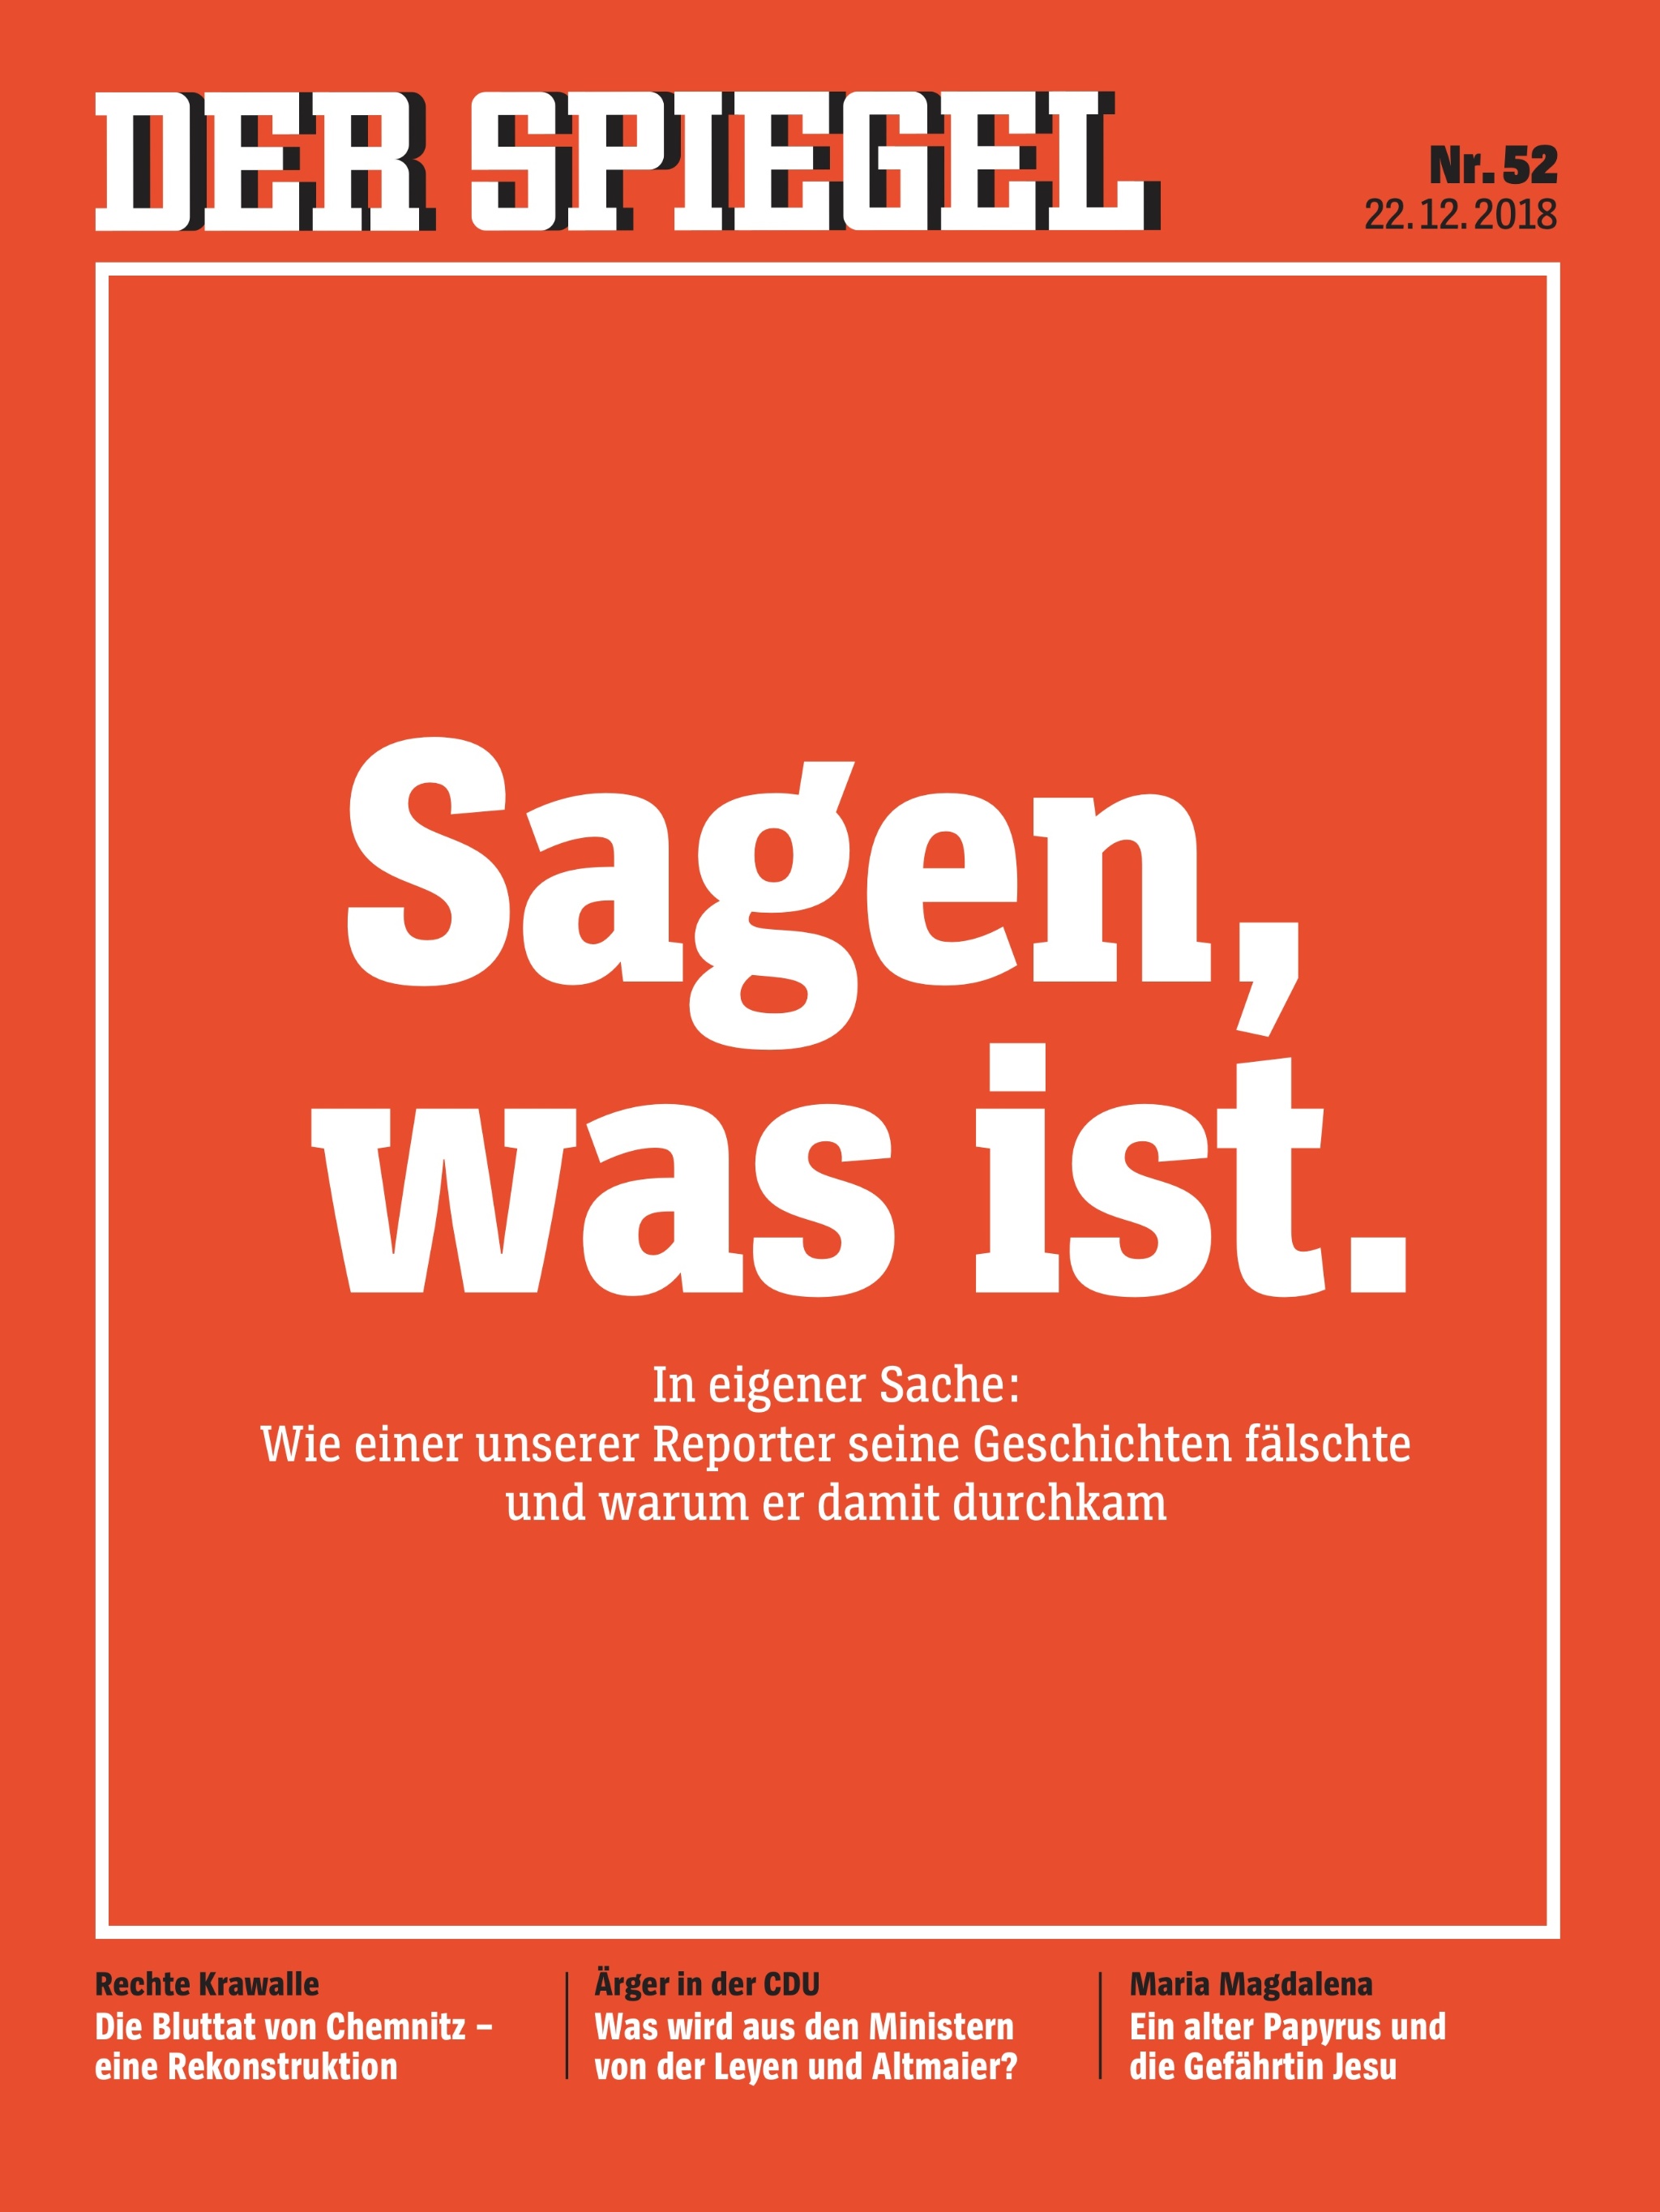 File:Der Spiegel - Sagen was ist.jpg - Wikimedia Commons